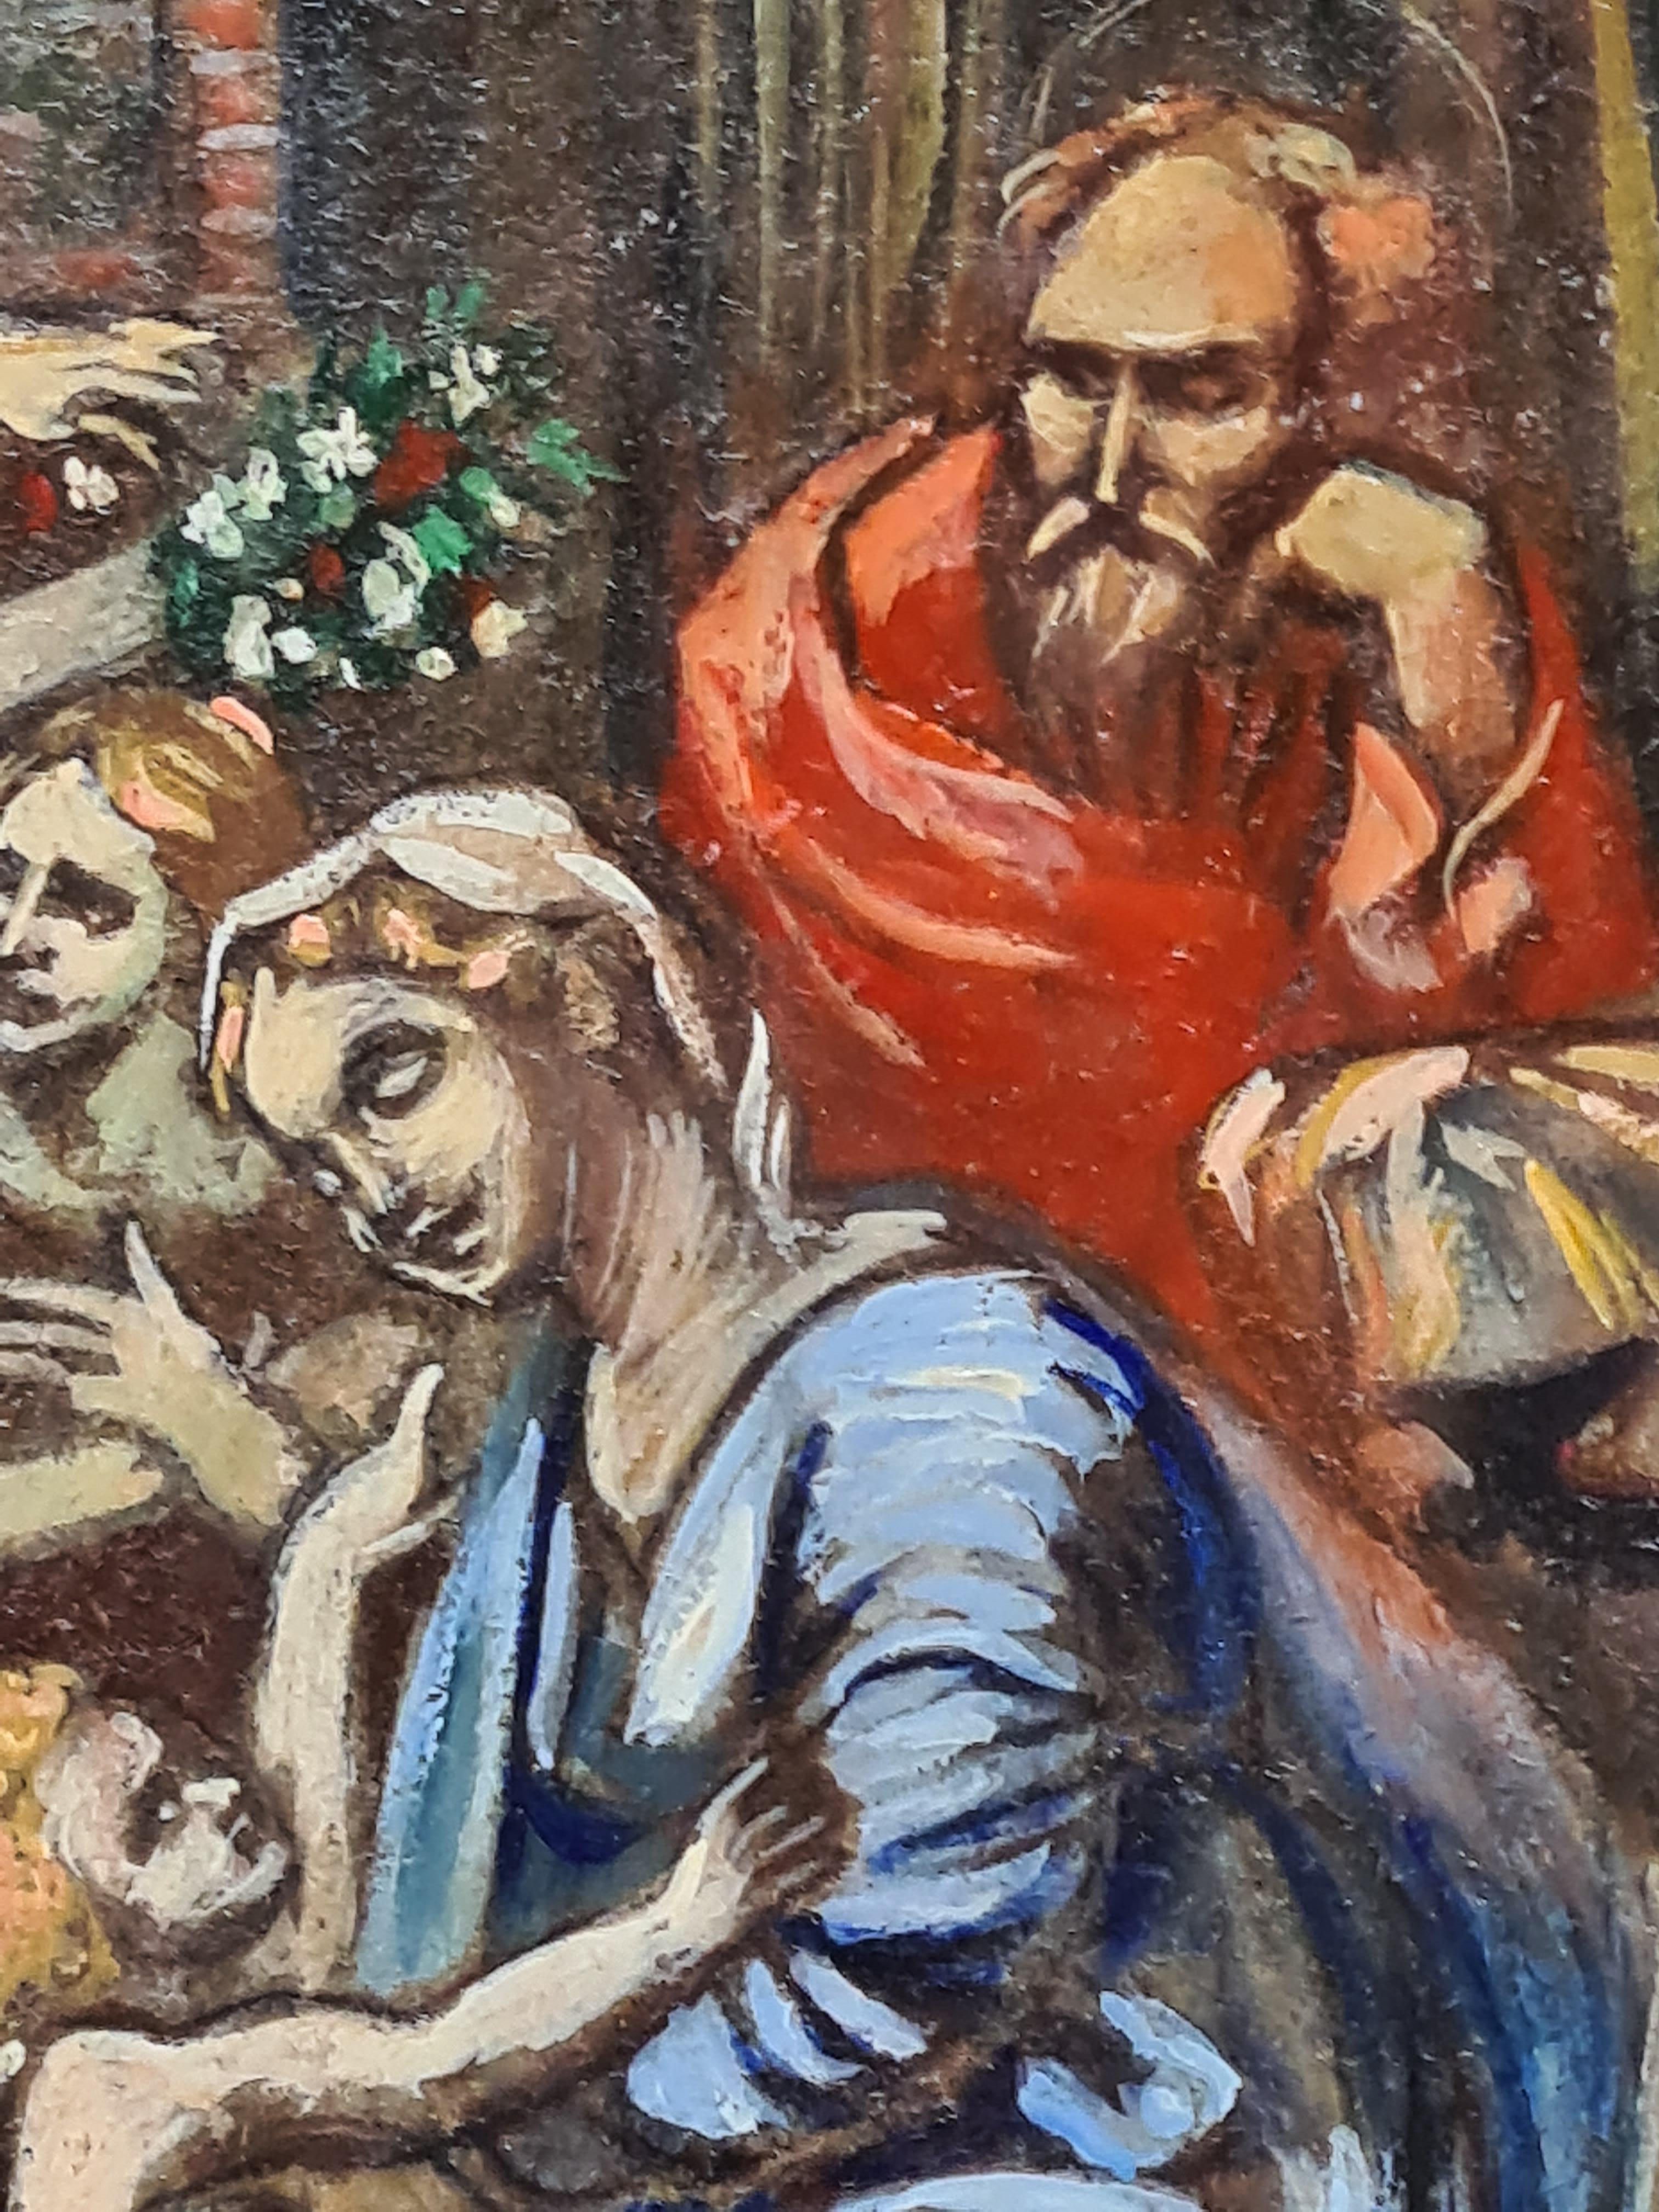 Gemälde der Heiligen Familie in Öl auf Karton vom Ende des 20. Jahrhunderts nach einem Werk von Raphael. Betitelt und mit Initialen auf der Rückseite der Karte.

Eine charmante akademische Studie über das berühmte Gemälde Die Heilige Familie von